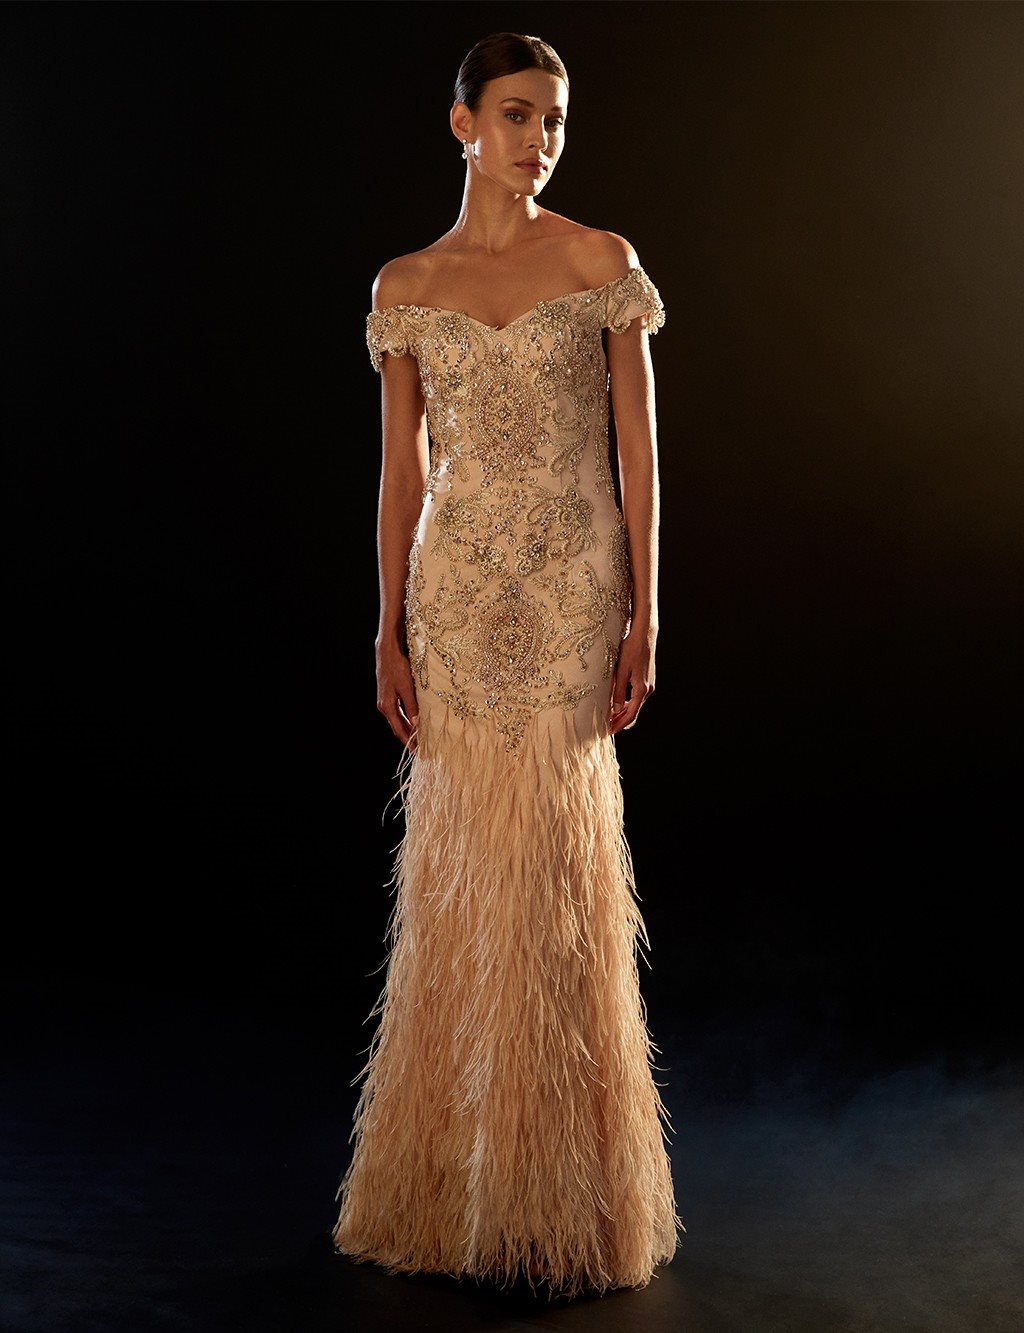 TIARA Skirt Tasseled Strapless Evening Dress Gold B9 26016